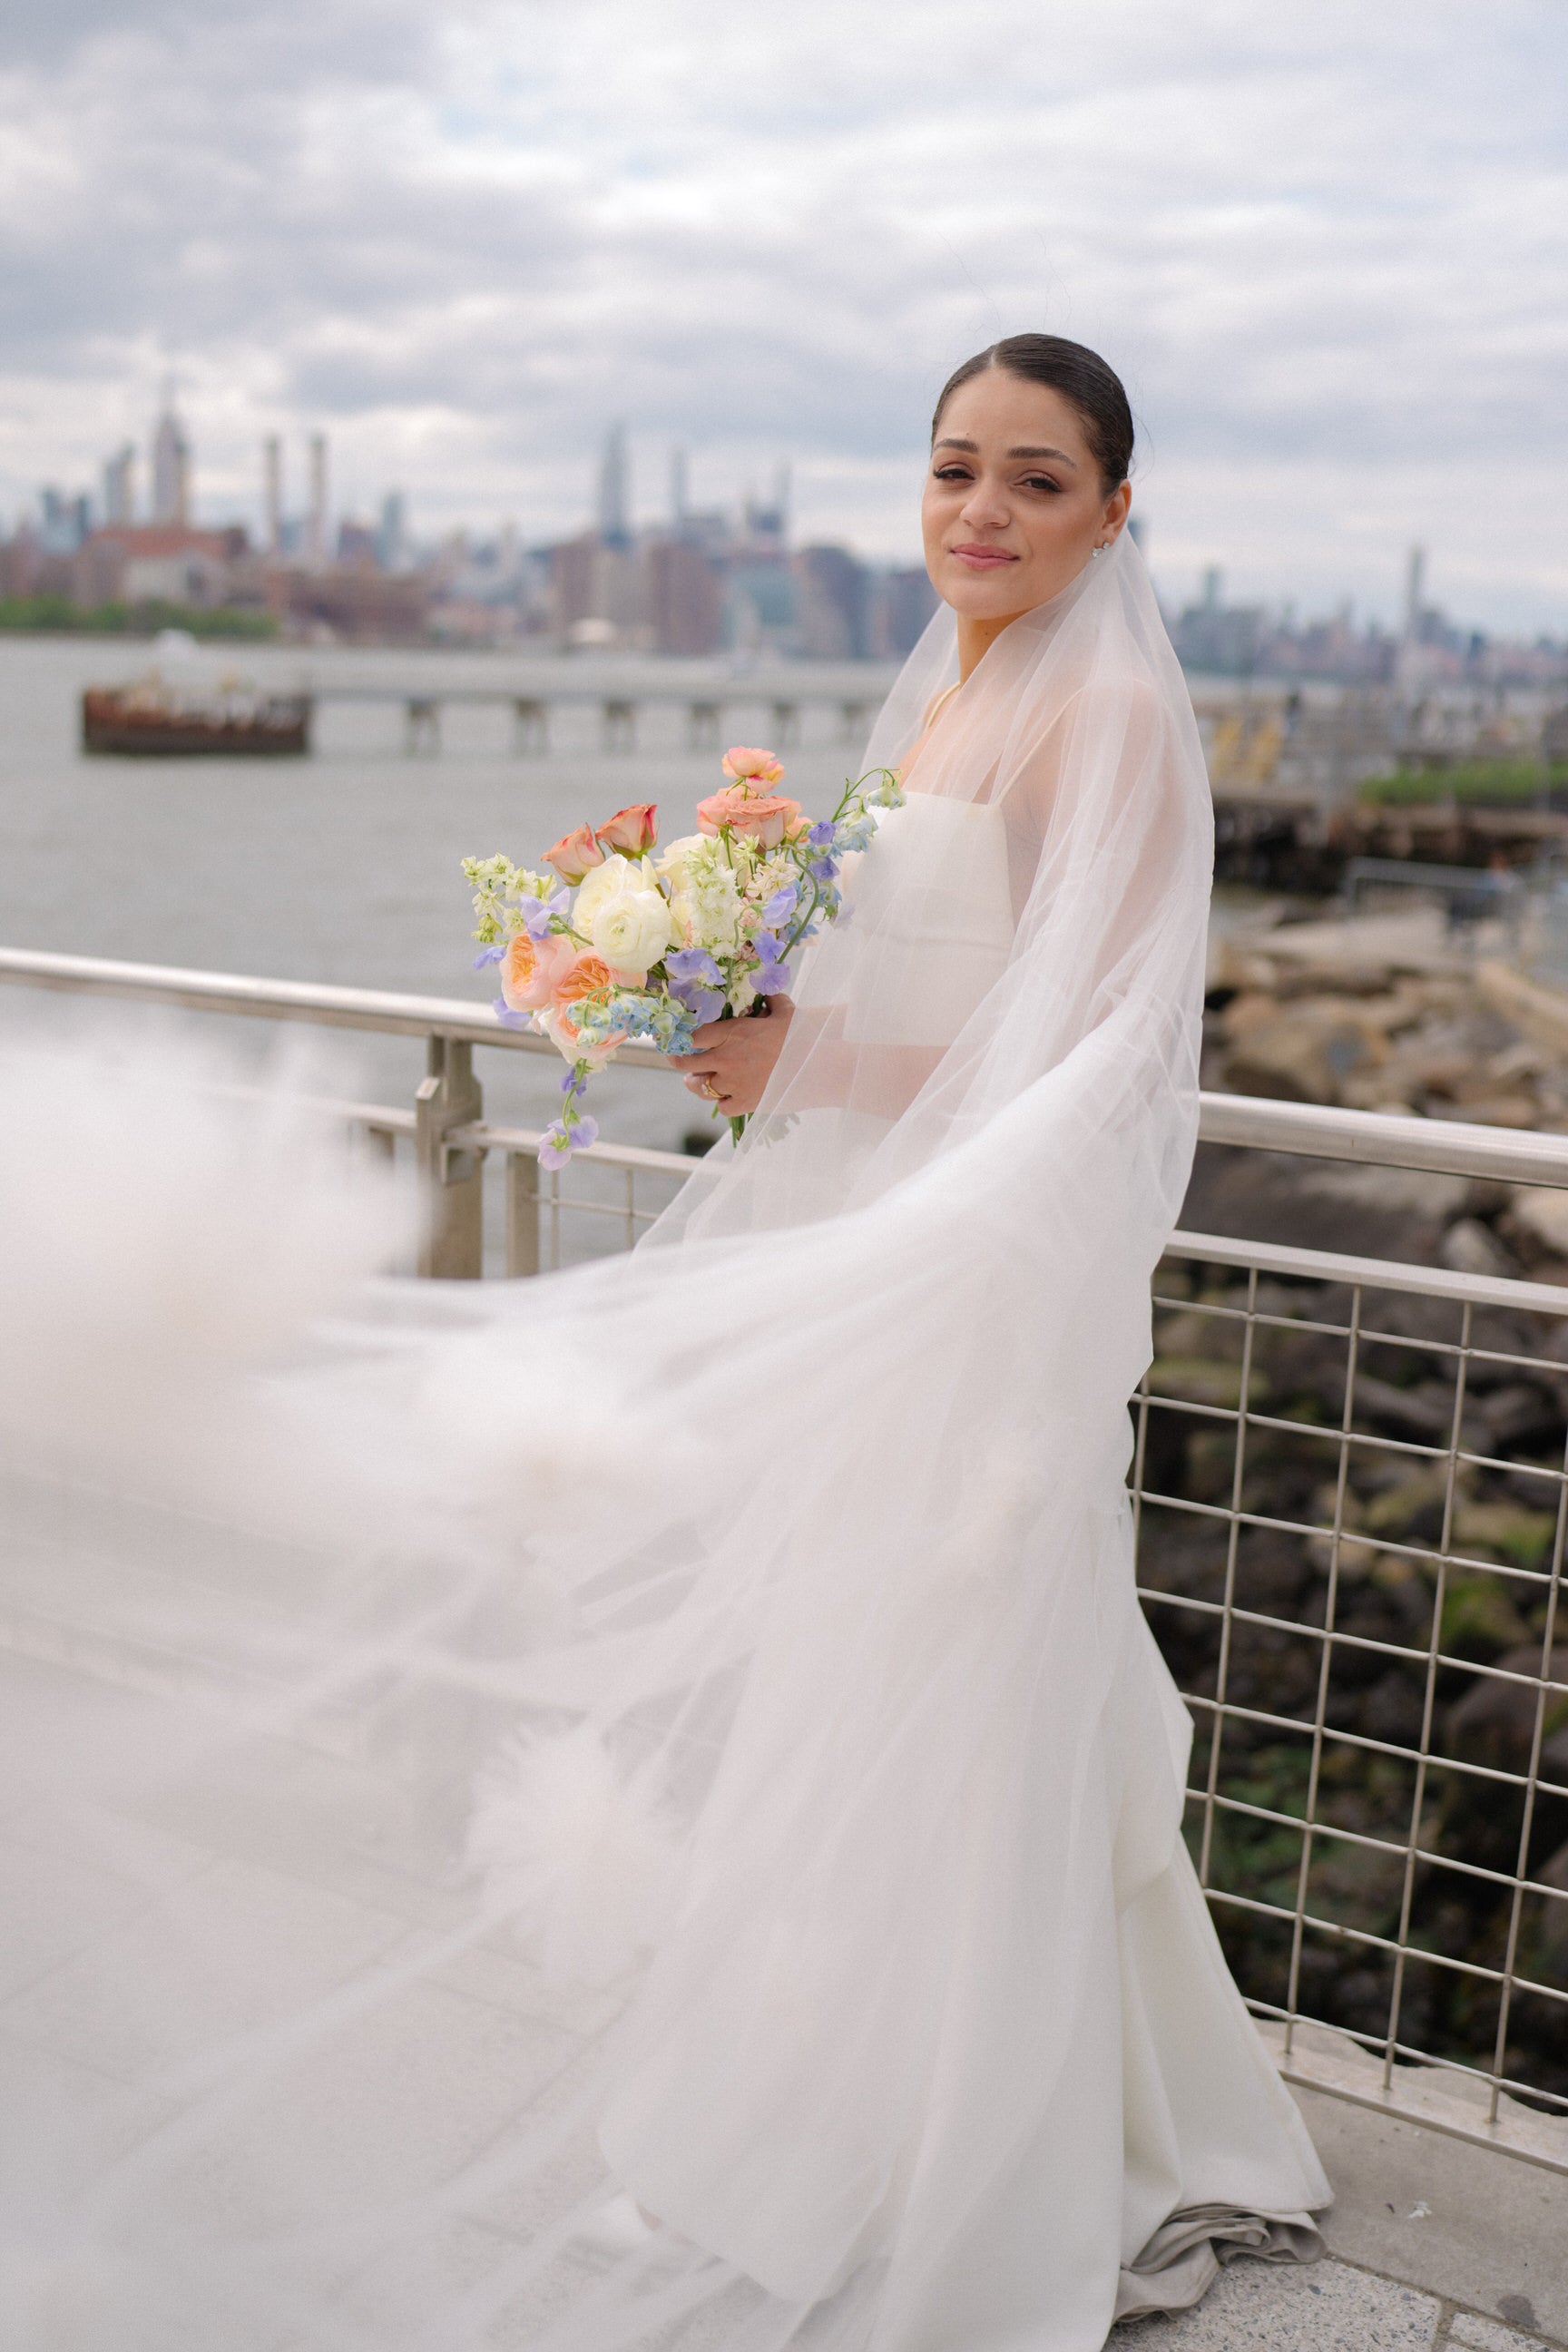 Romantic Bridal Veil with Floral Details